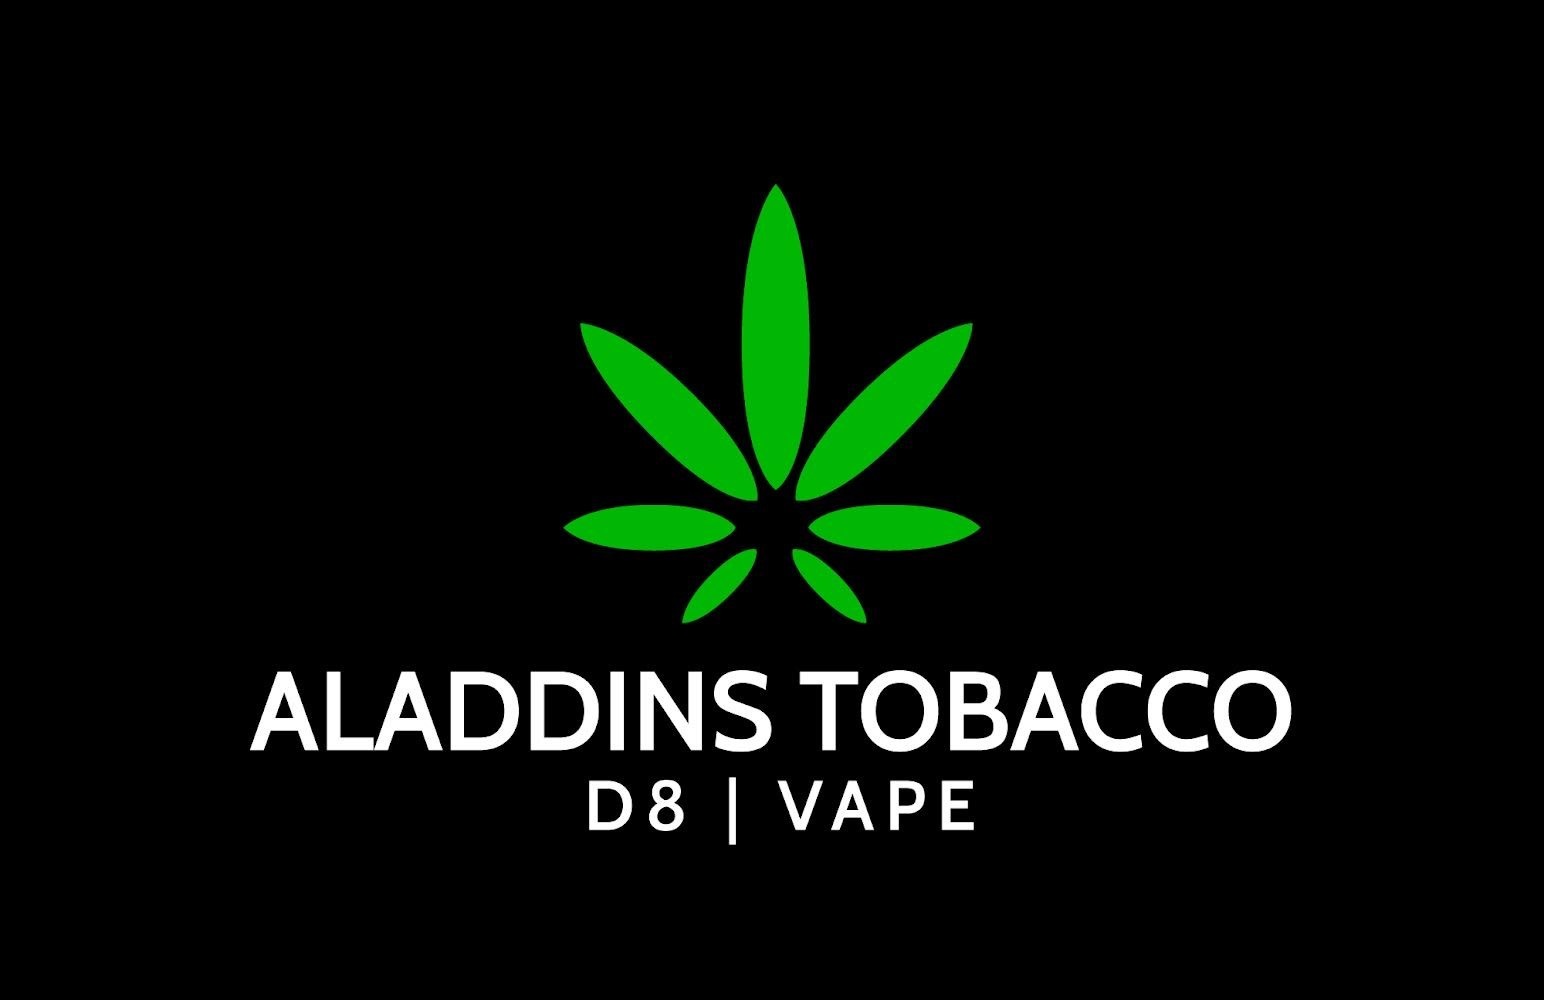 Aladdin's Tobacco